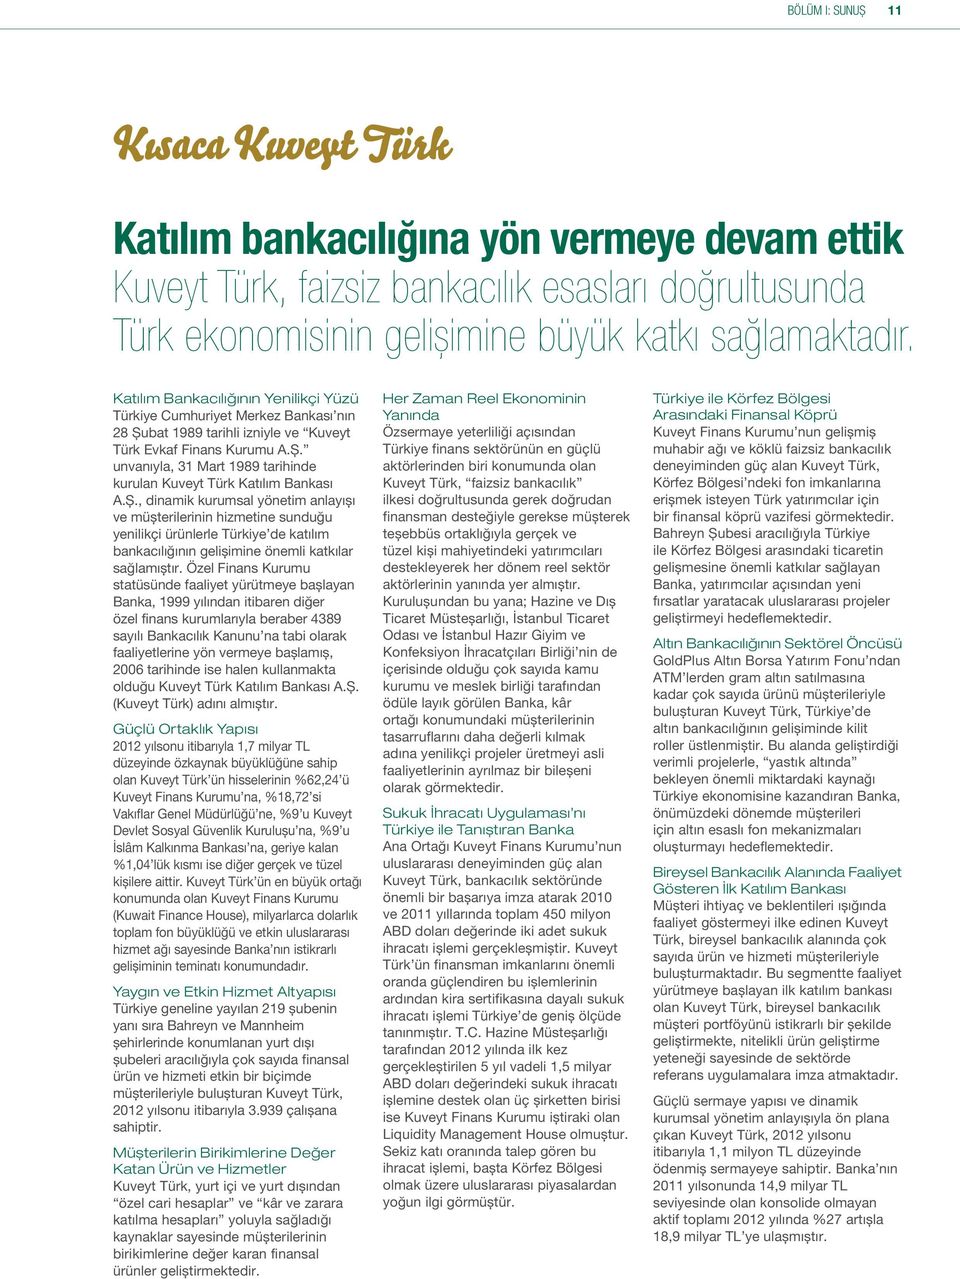 Ş., dinamik kurumsal yönetim anlayışı ve müşterilerinin hizmetine sunduğu yenilikçi ürünlerle Türkiye de katılım bankacılığının gelişimine önemli katkılar sağlamıştır.